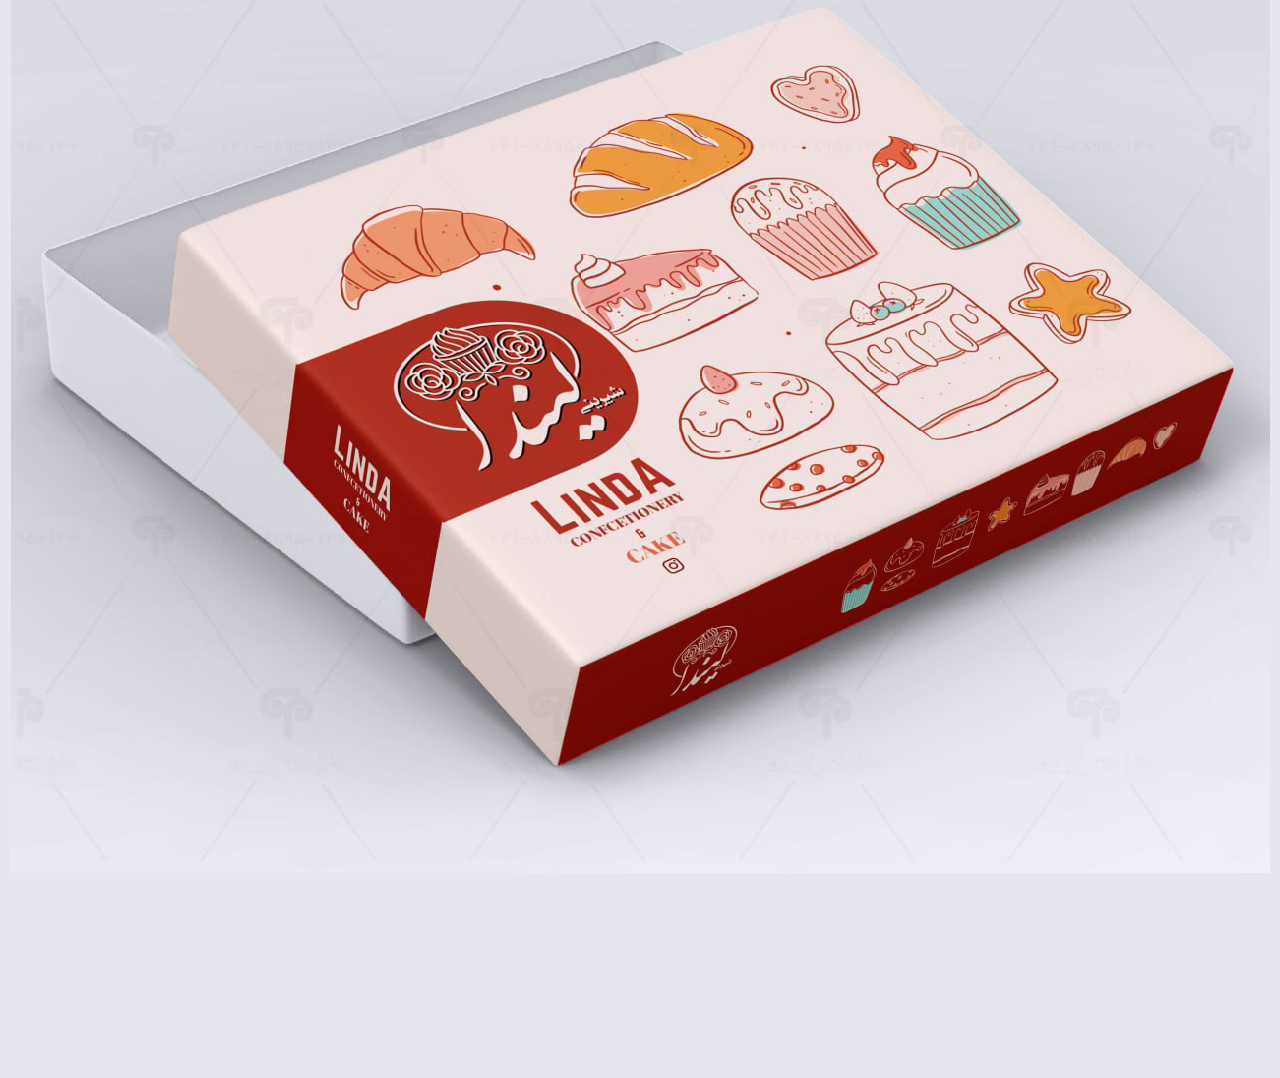 طراحی جعبه شیرینی لیندا 3